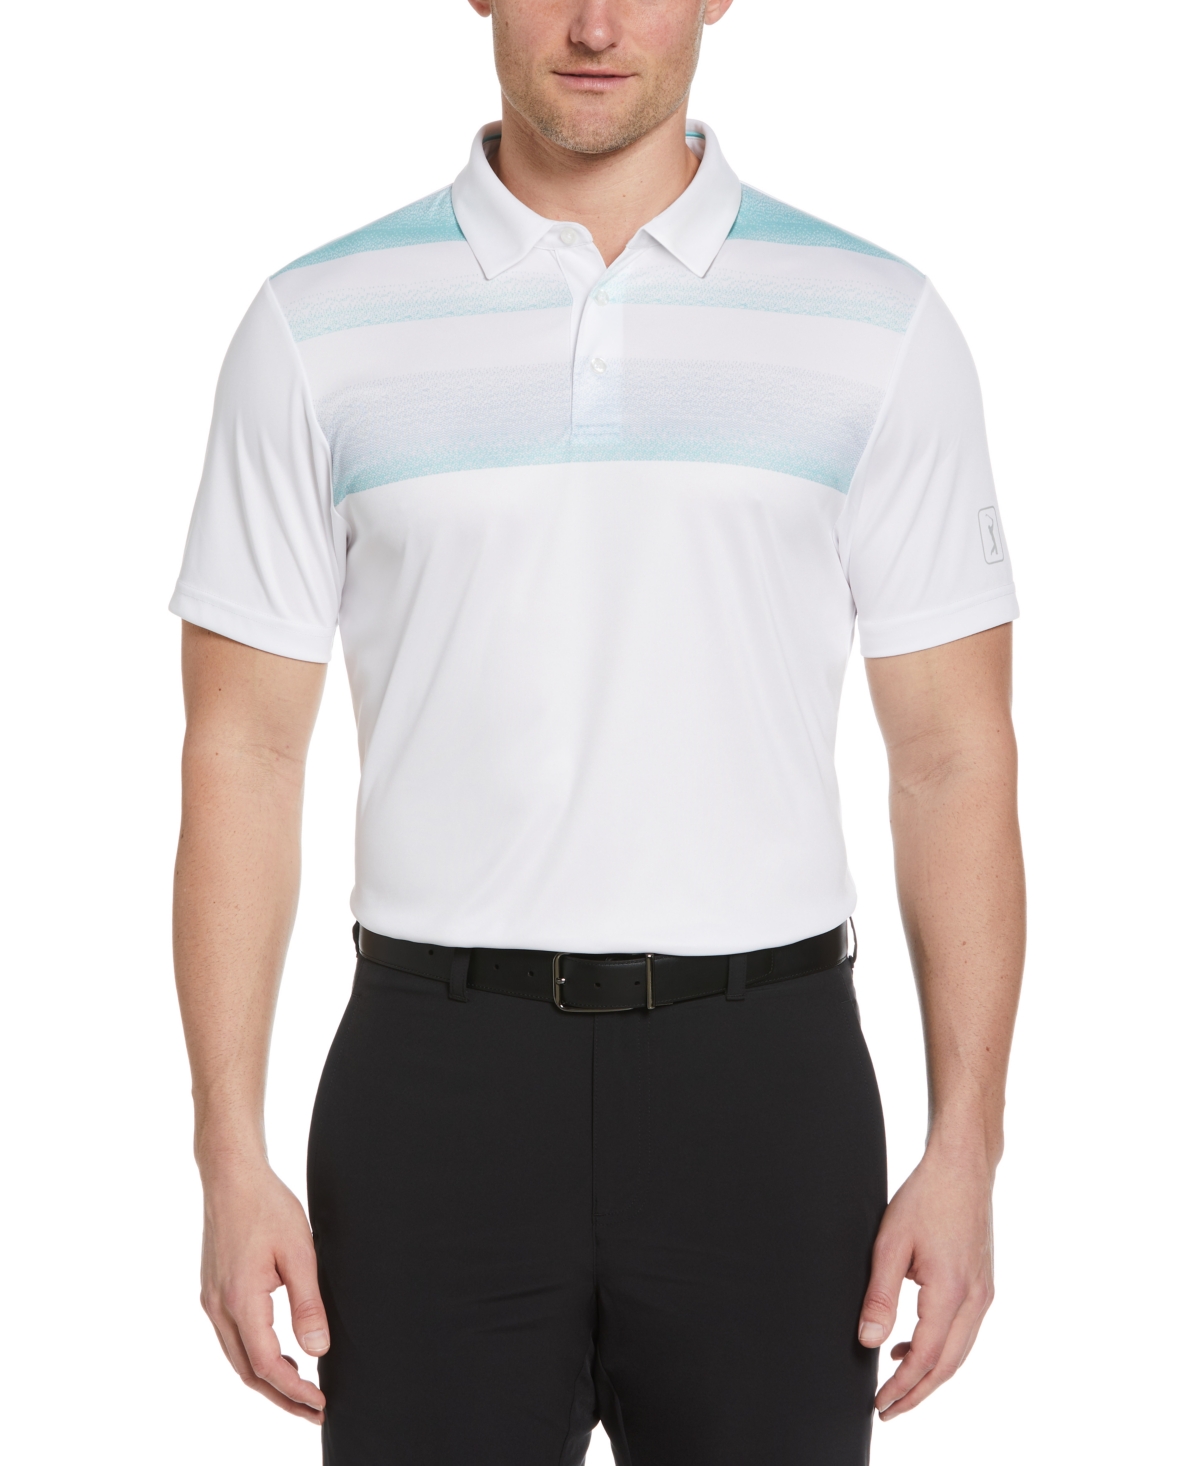 Men's Stitched Chest Block Polo Shirt - Bright White